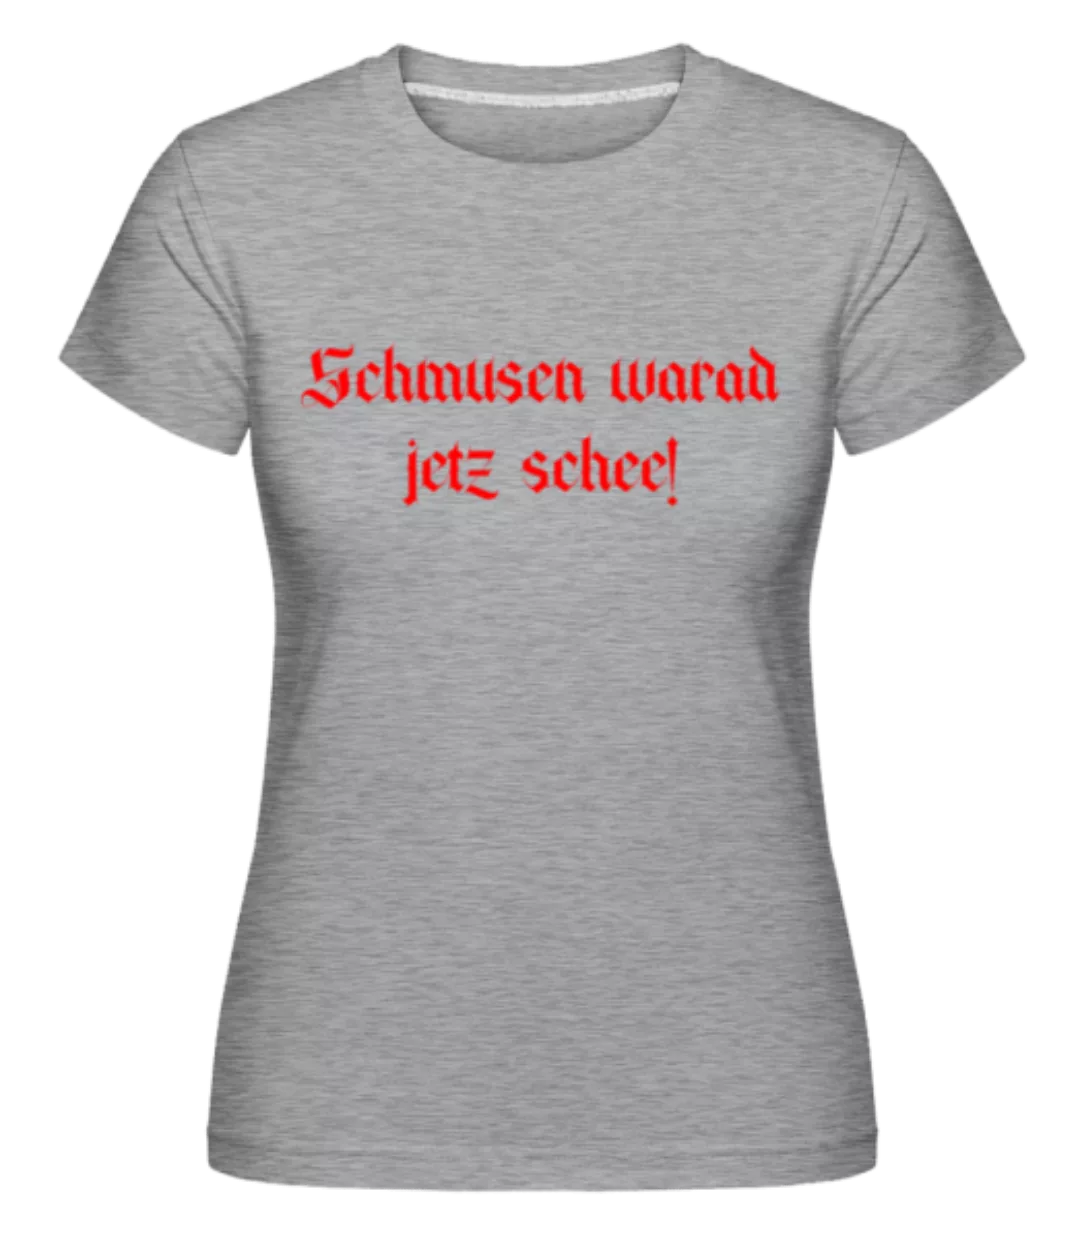 Schmusen Warad Jetz Schee! · Shirtinator Frauen T-Shirt günstig online kaufen